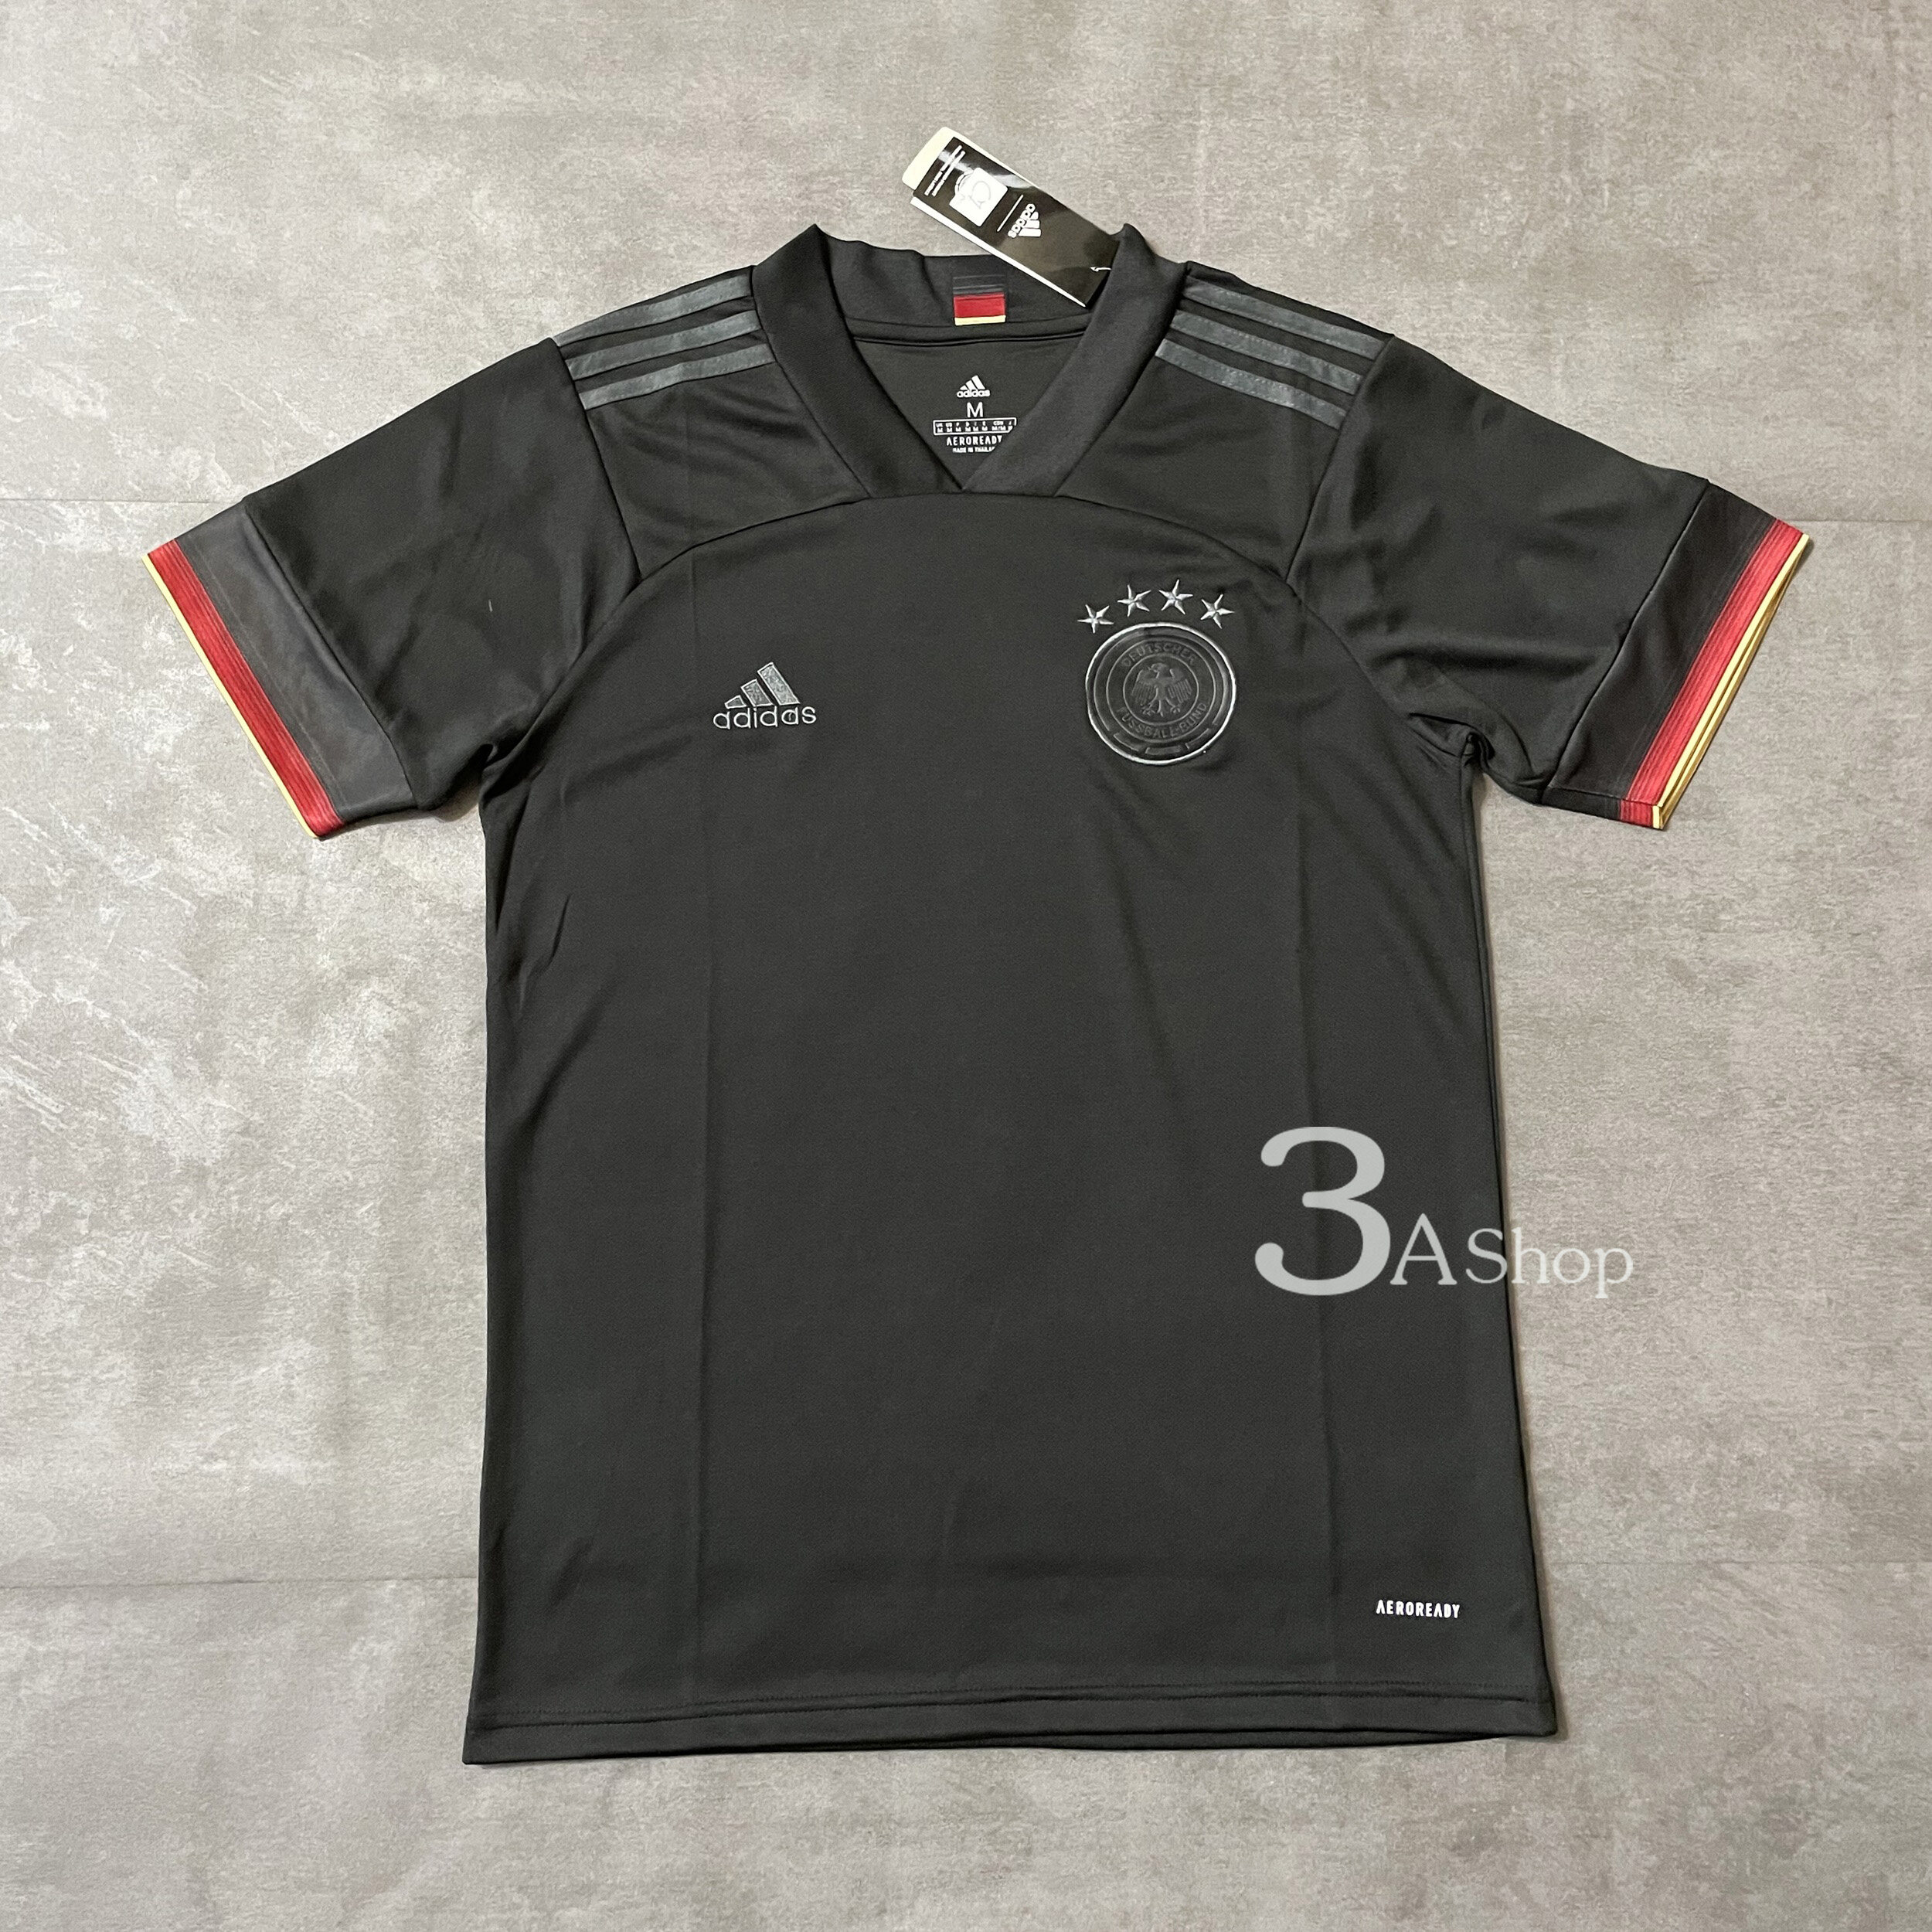 Germany 20 FOOTBALL SHIRT SOCCER  เสื้อบอล เสื้อฟุตบอลชาย เสื้อบอลชาย เสื้อฟุตบอล เสื้อกีฬาชาย2021 เสื้อทีมเยอรมัน ปี20 เกรด 3A